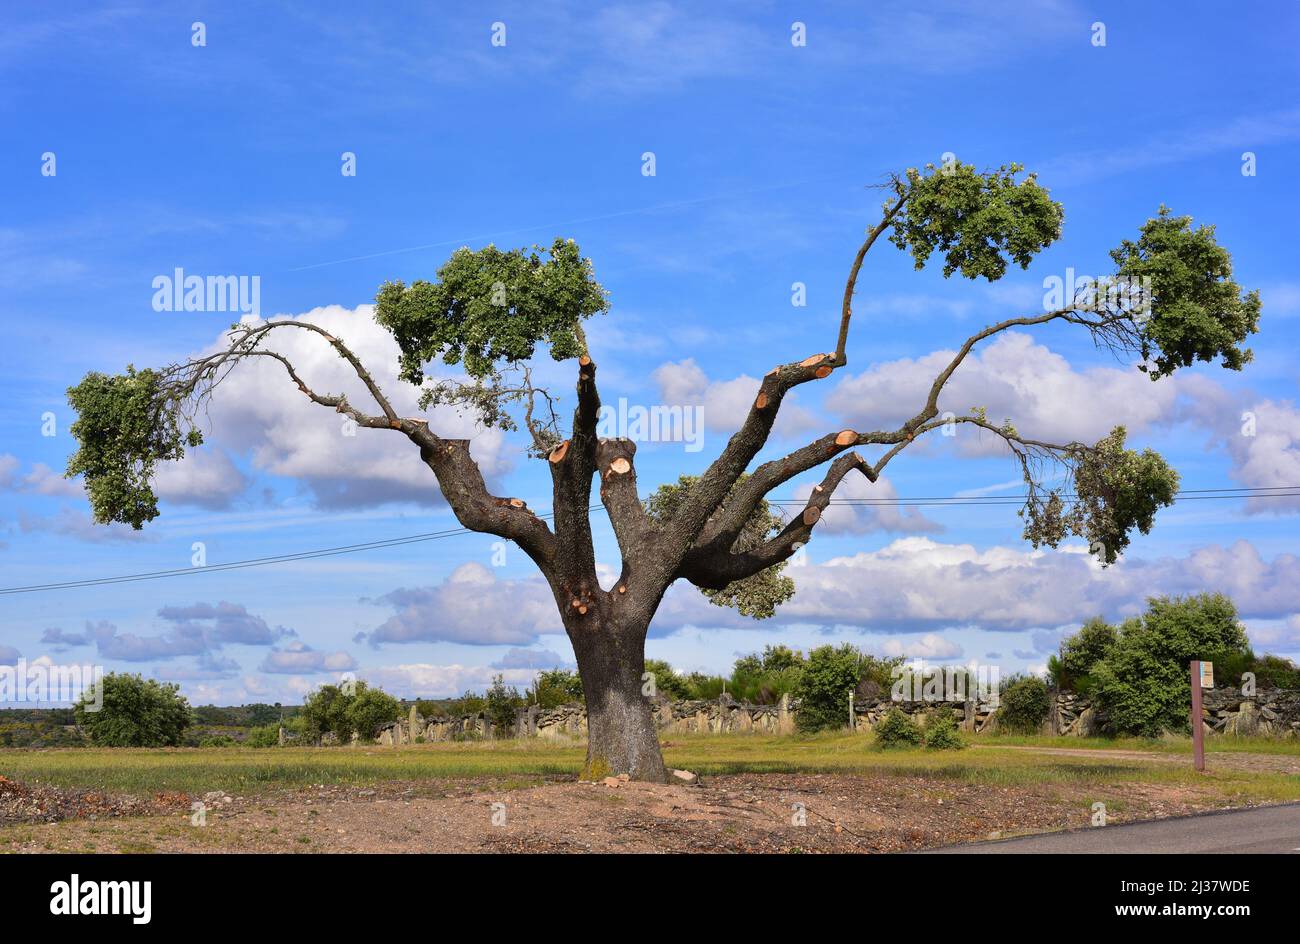 Le chêne d'Evergreen (Quercus ilex ballota ou Quercus ilex rotundifolia) est un arbre à feuilles persistantes originaire du bassin méditerranéen (péninsule ibérique et Banque D'Images